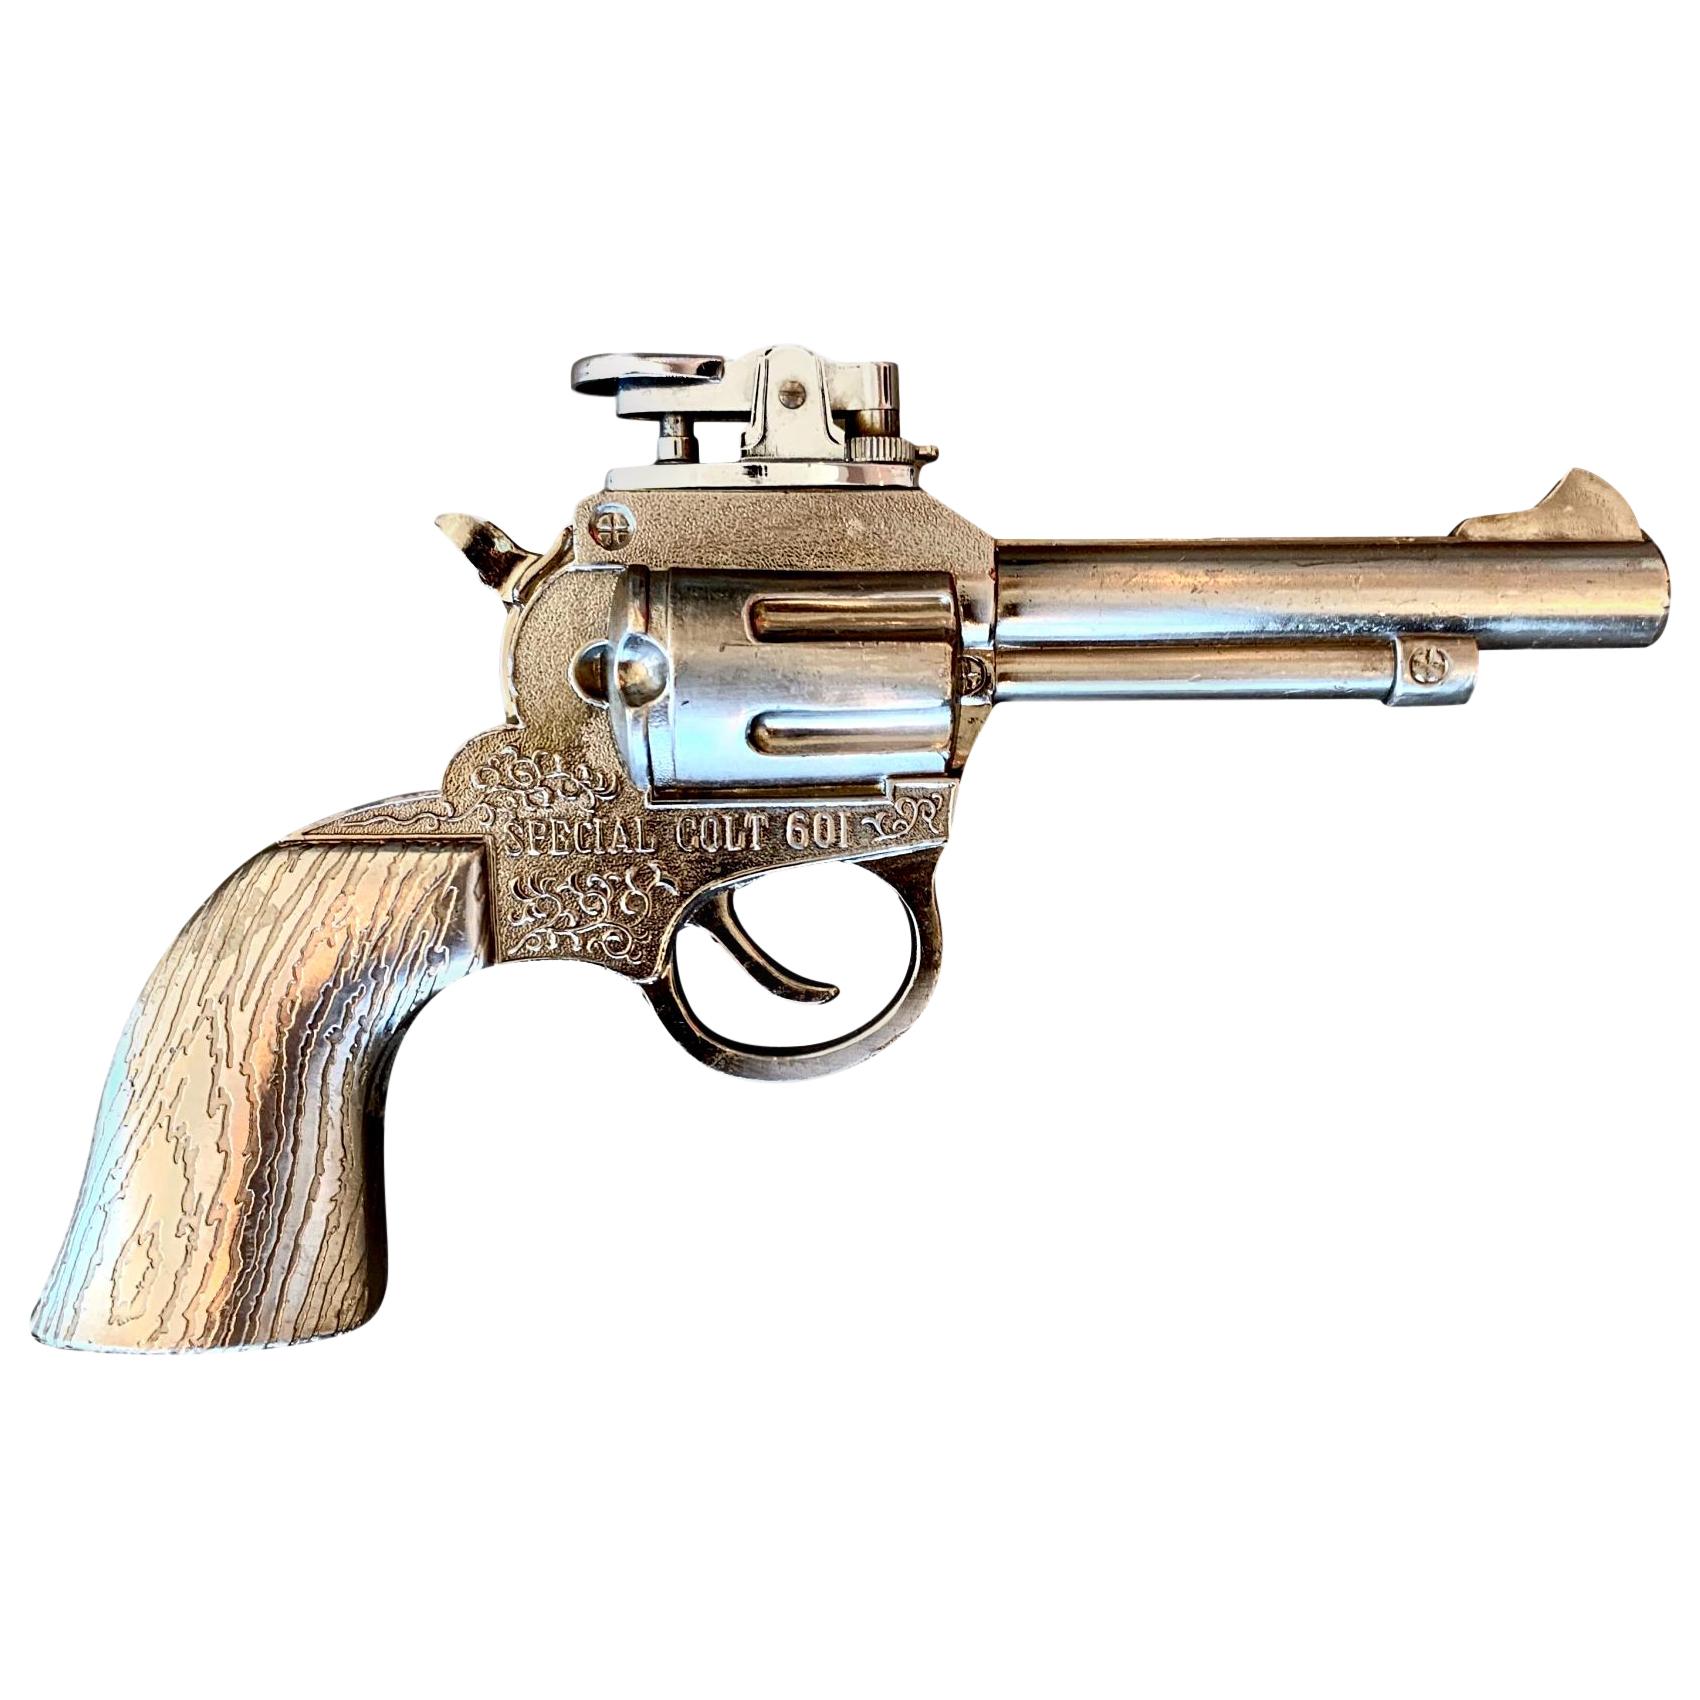 Vintage Special Colt 601 Revolver Lighter